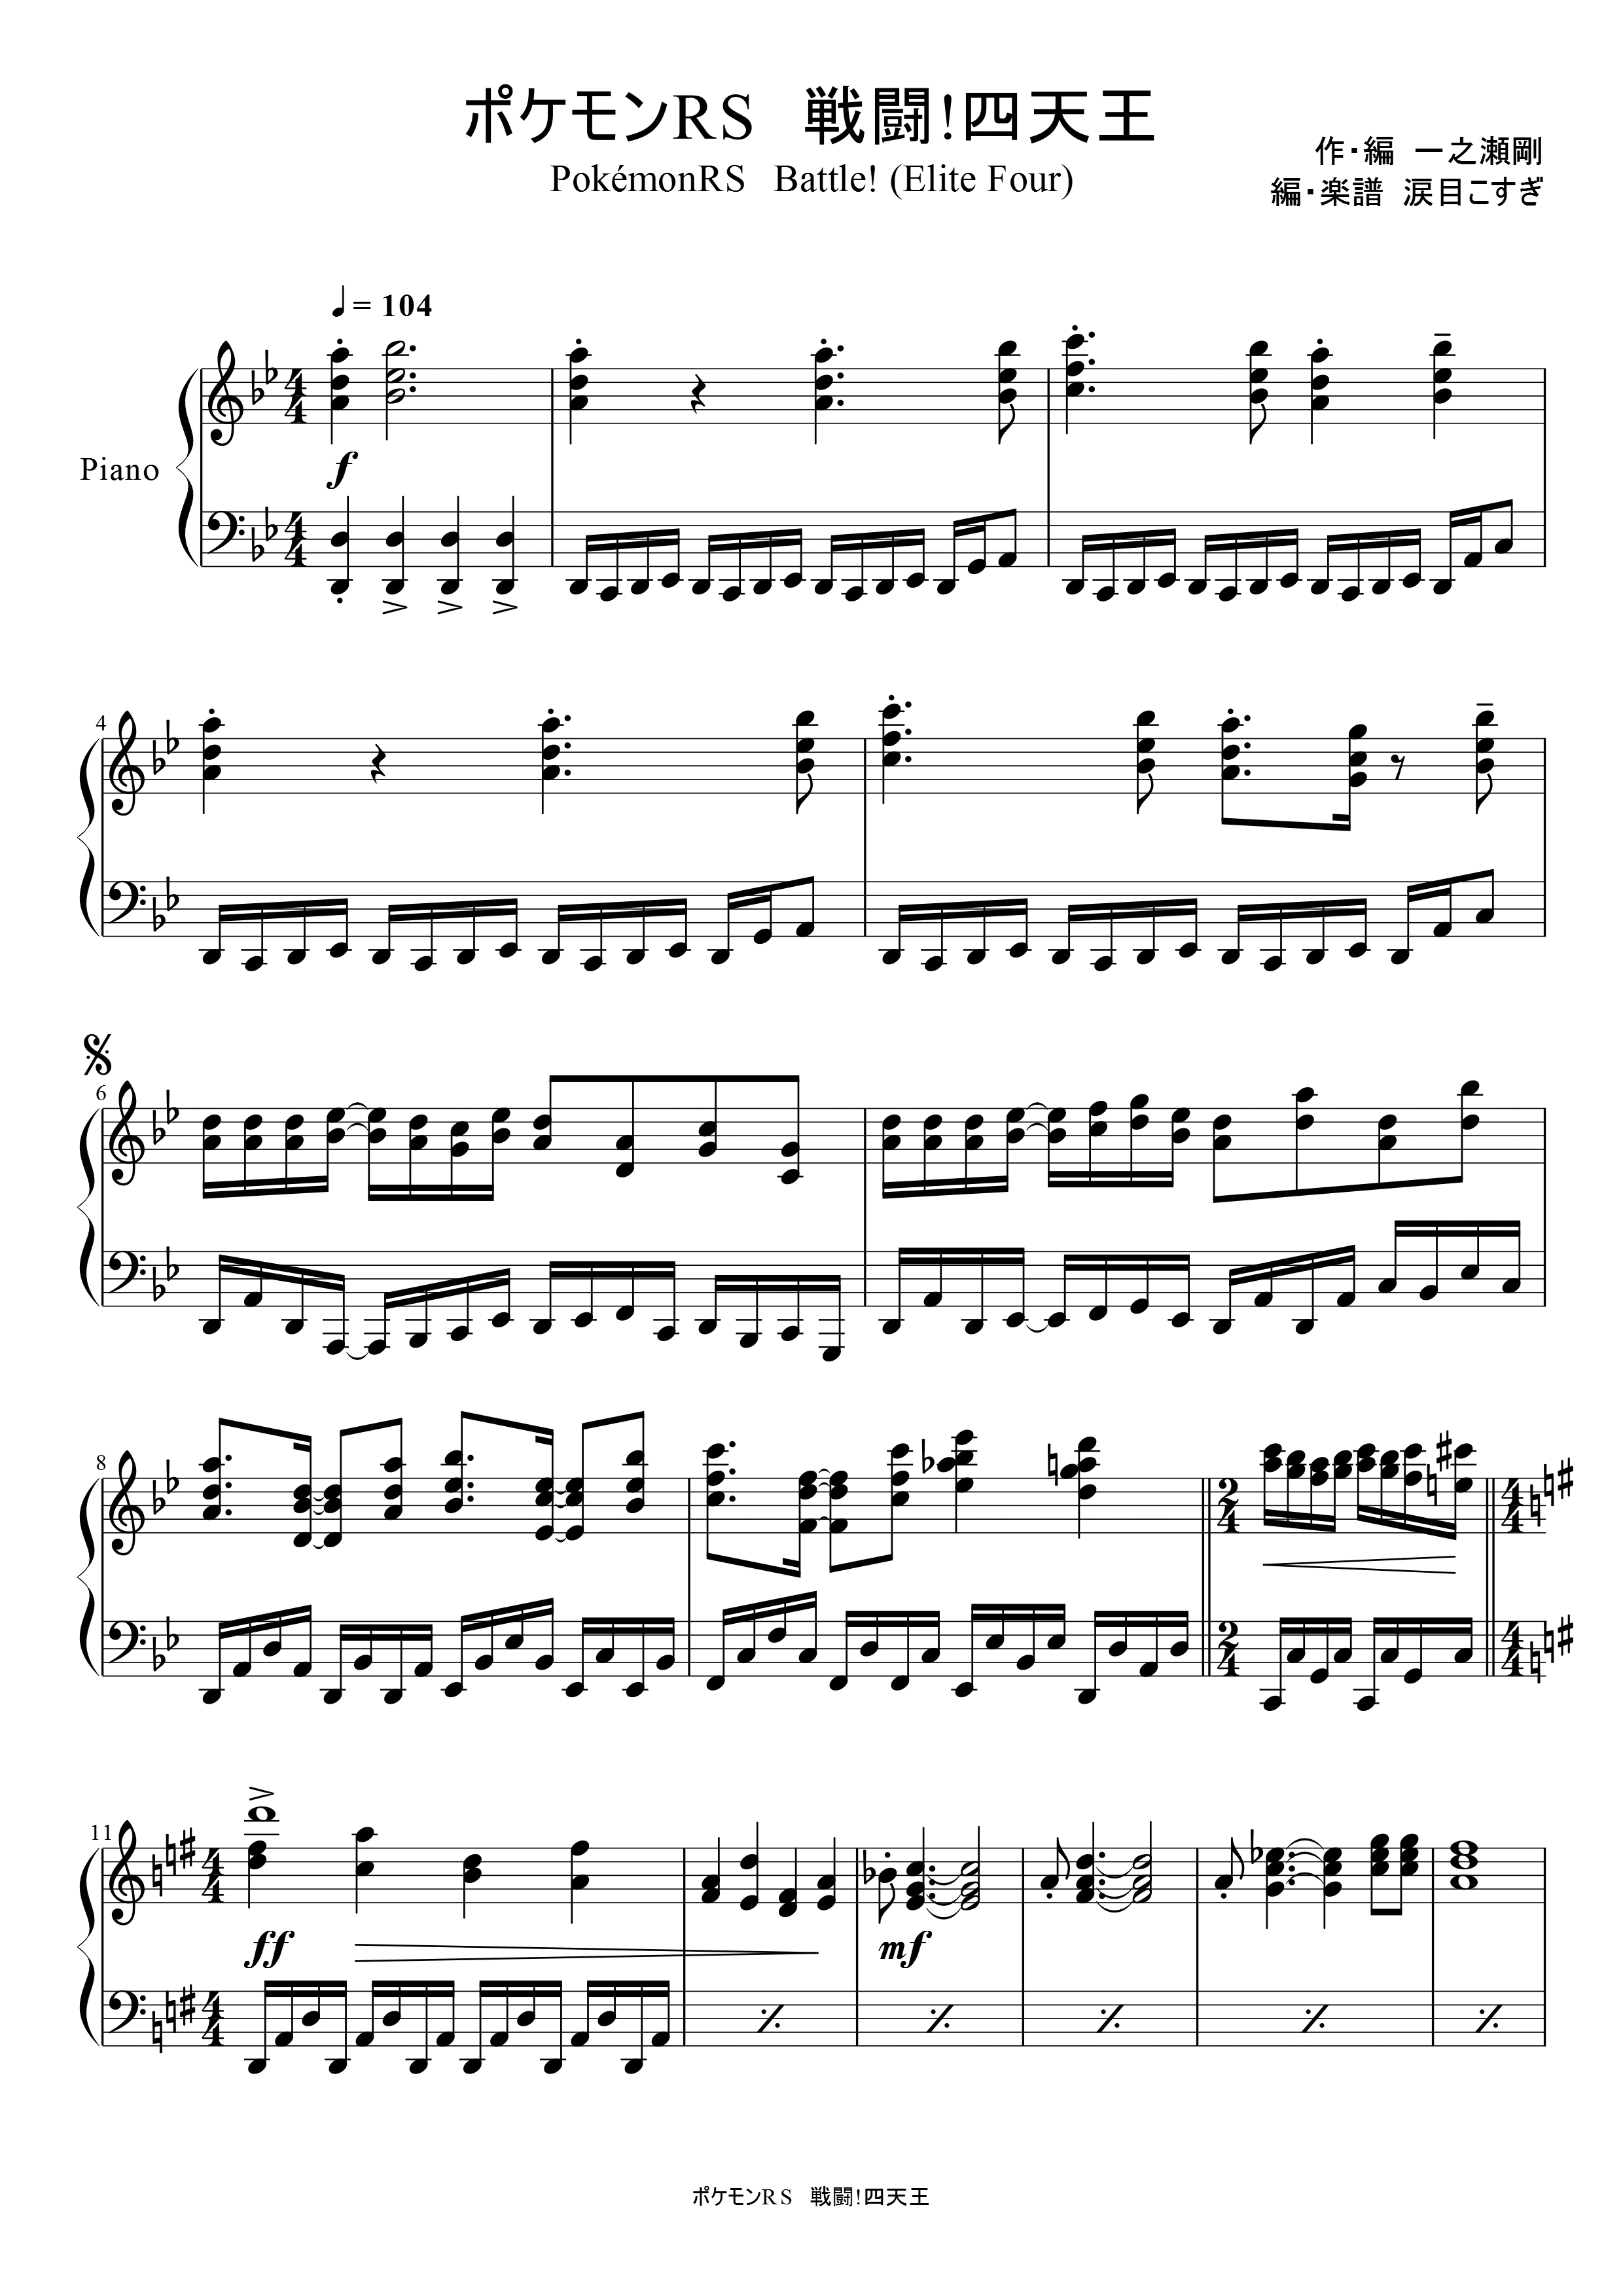 ポケモン ピアノ 楽譜 イメージポケモンコレクション